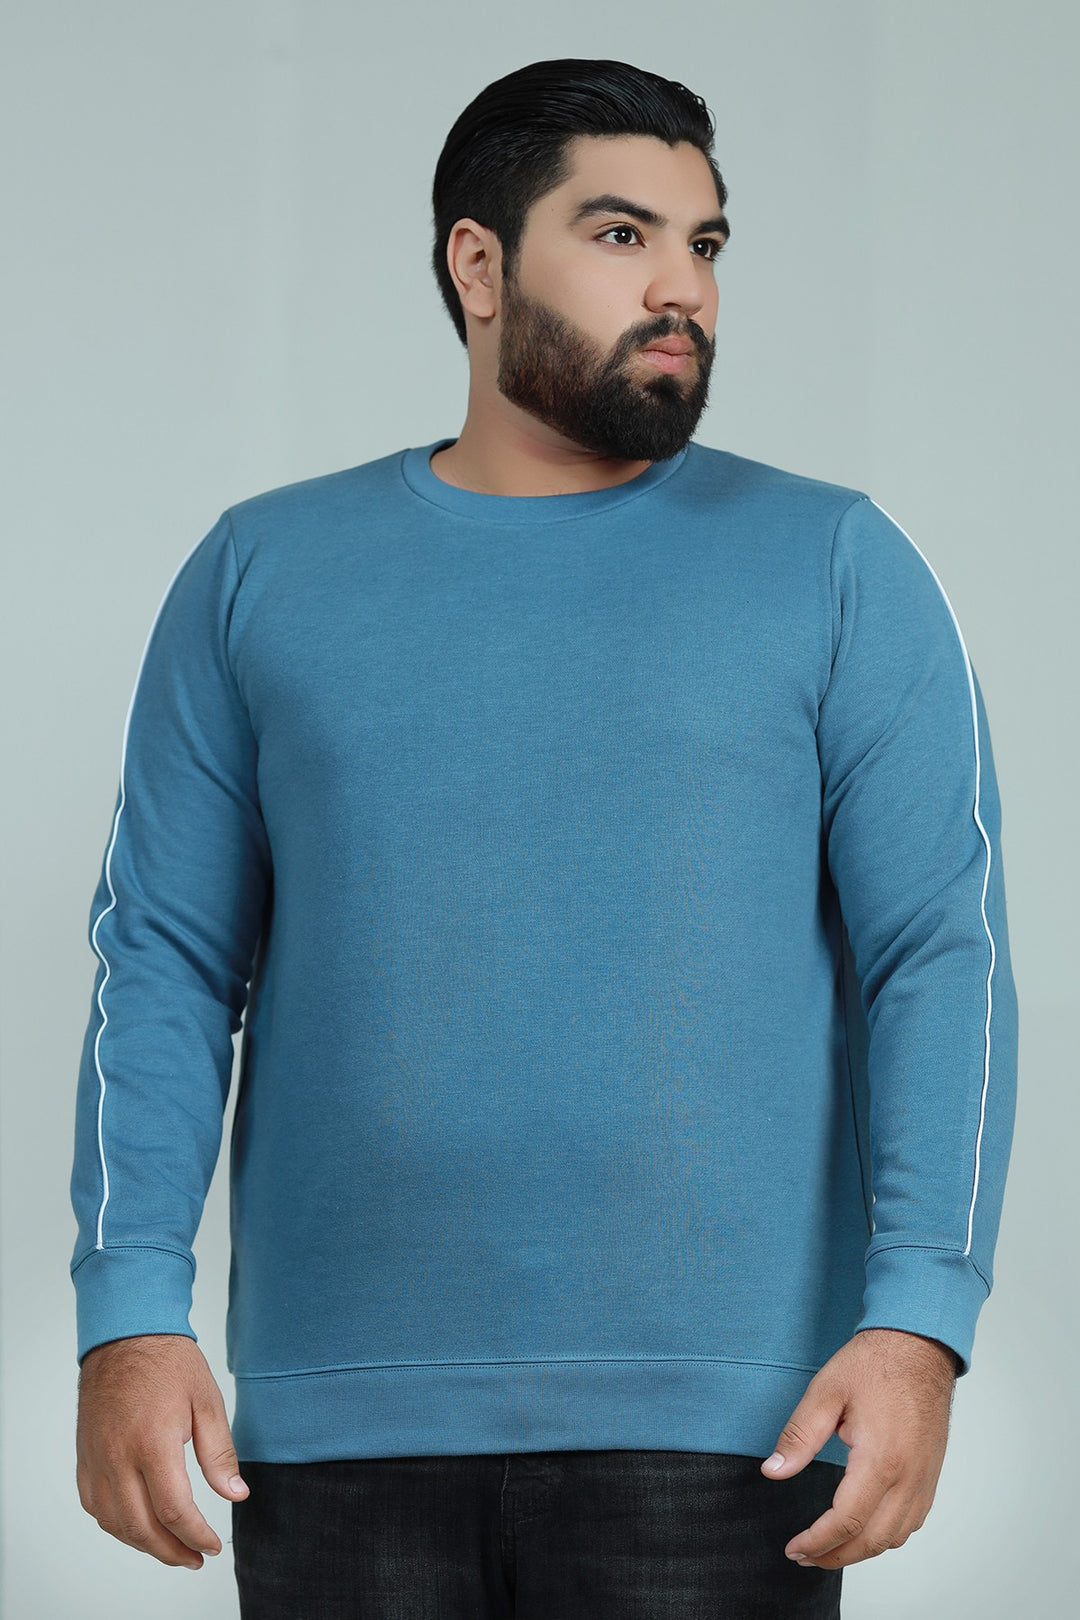 Cerulean Blue Sweatshirt (Plus Size) - W21 - MSW010P